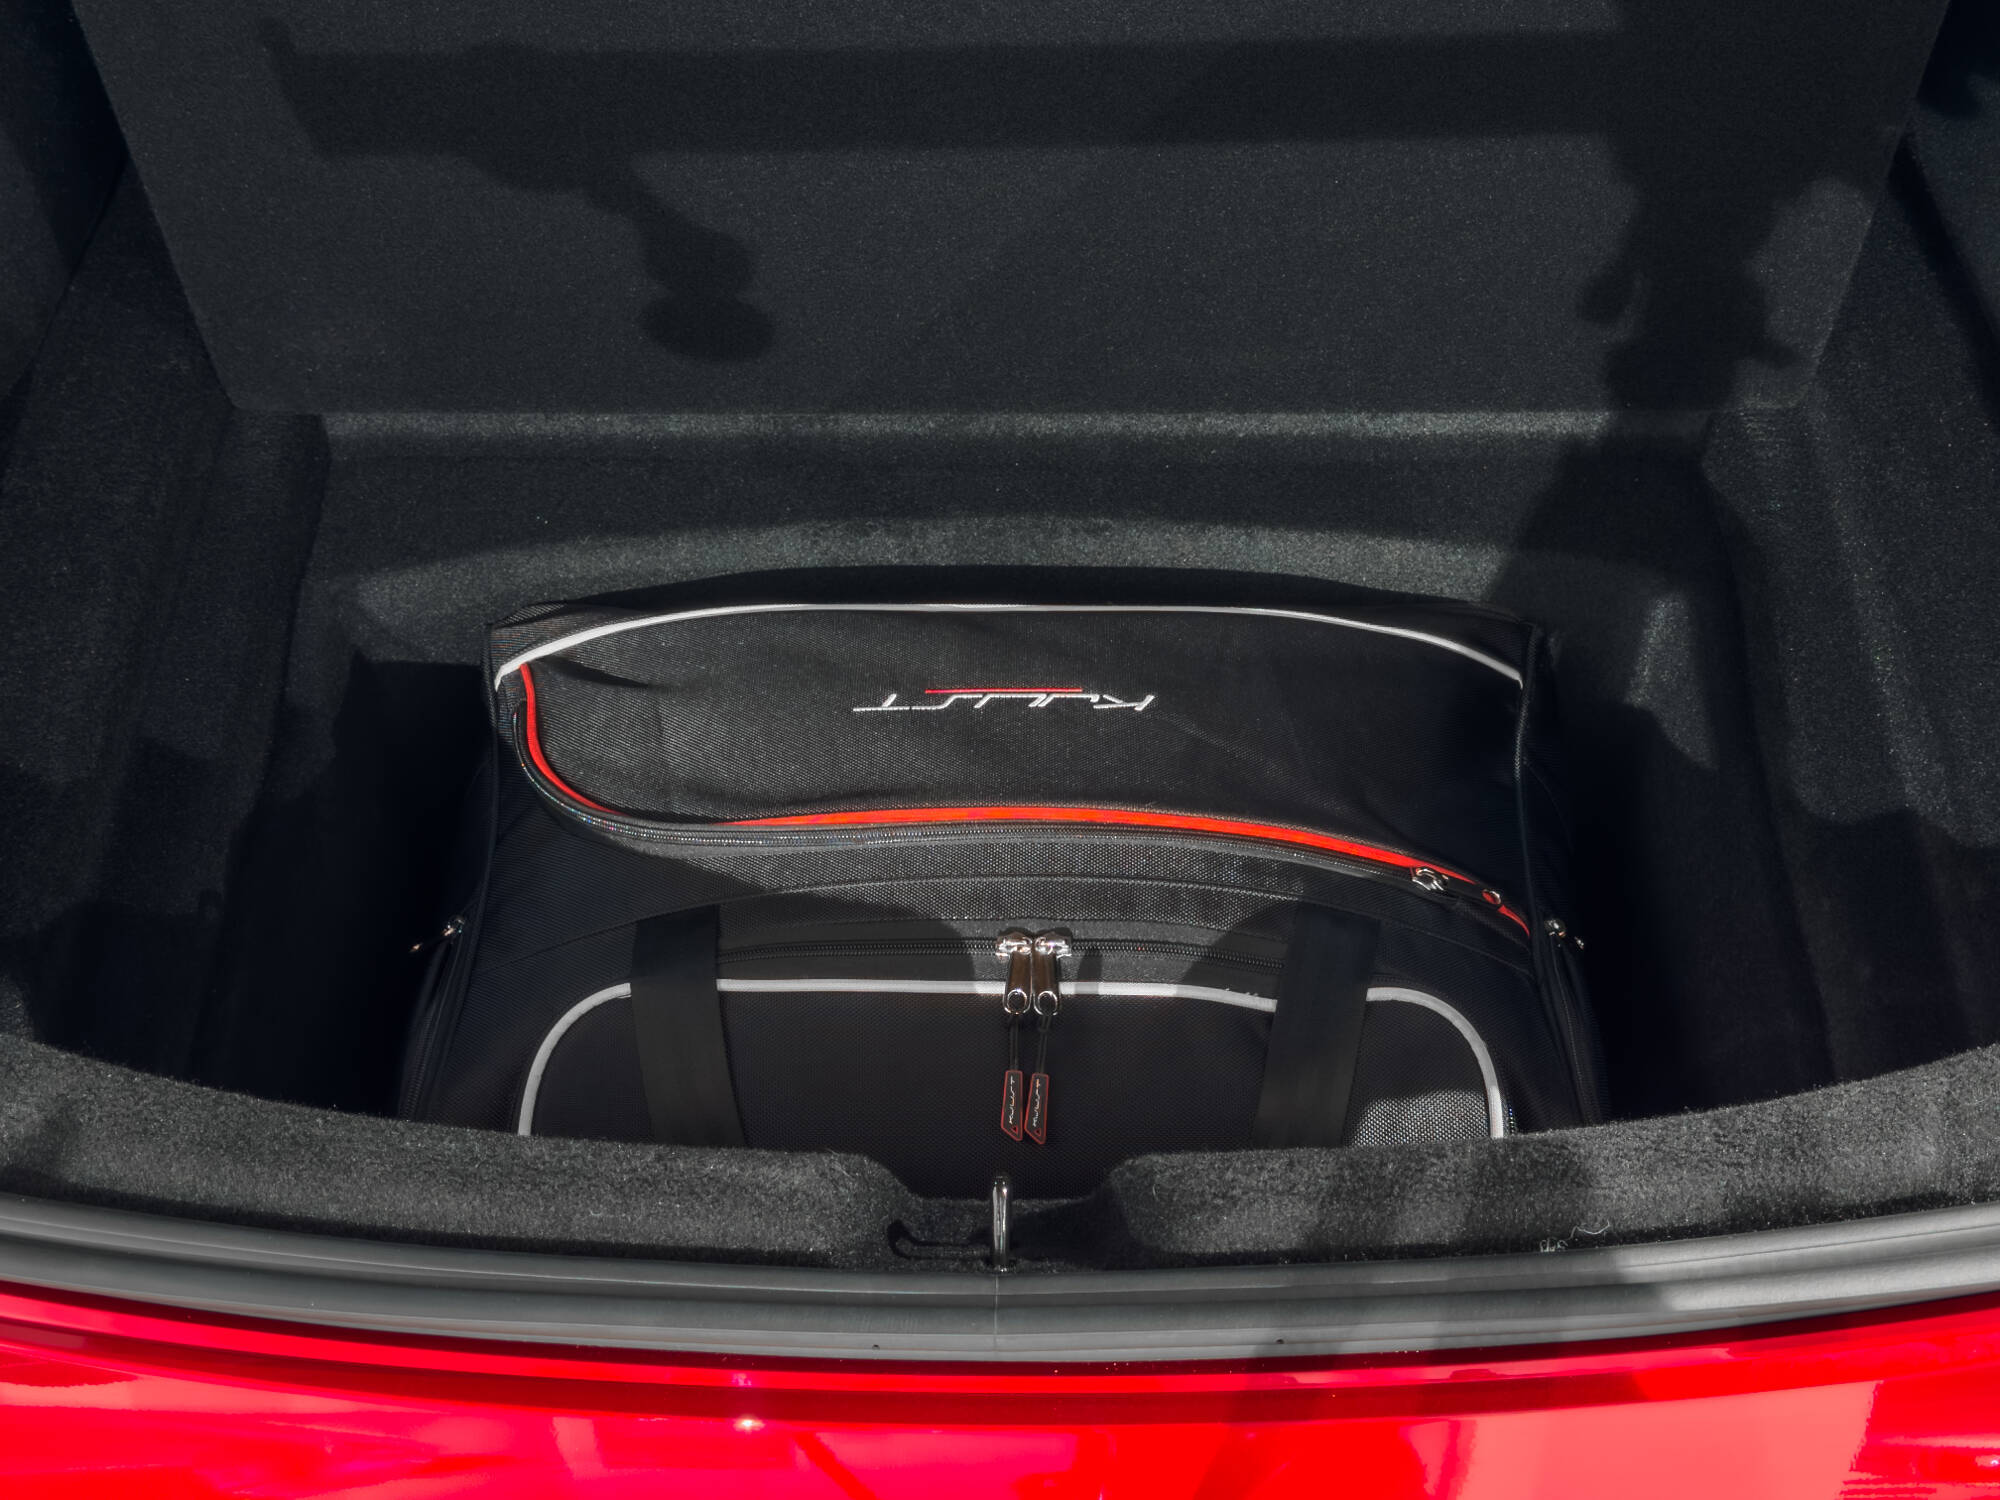 Kjust trunk bag set for the Tesla Model 3